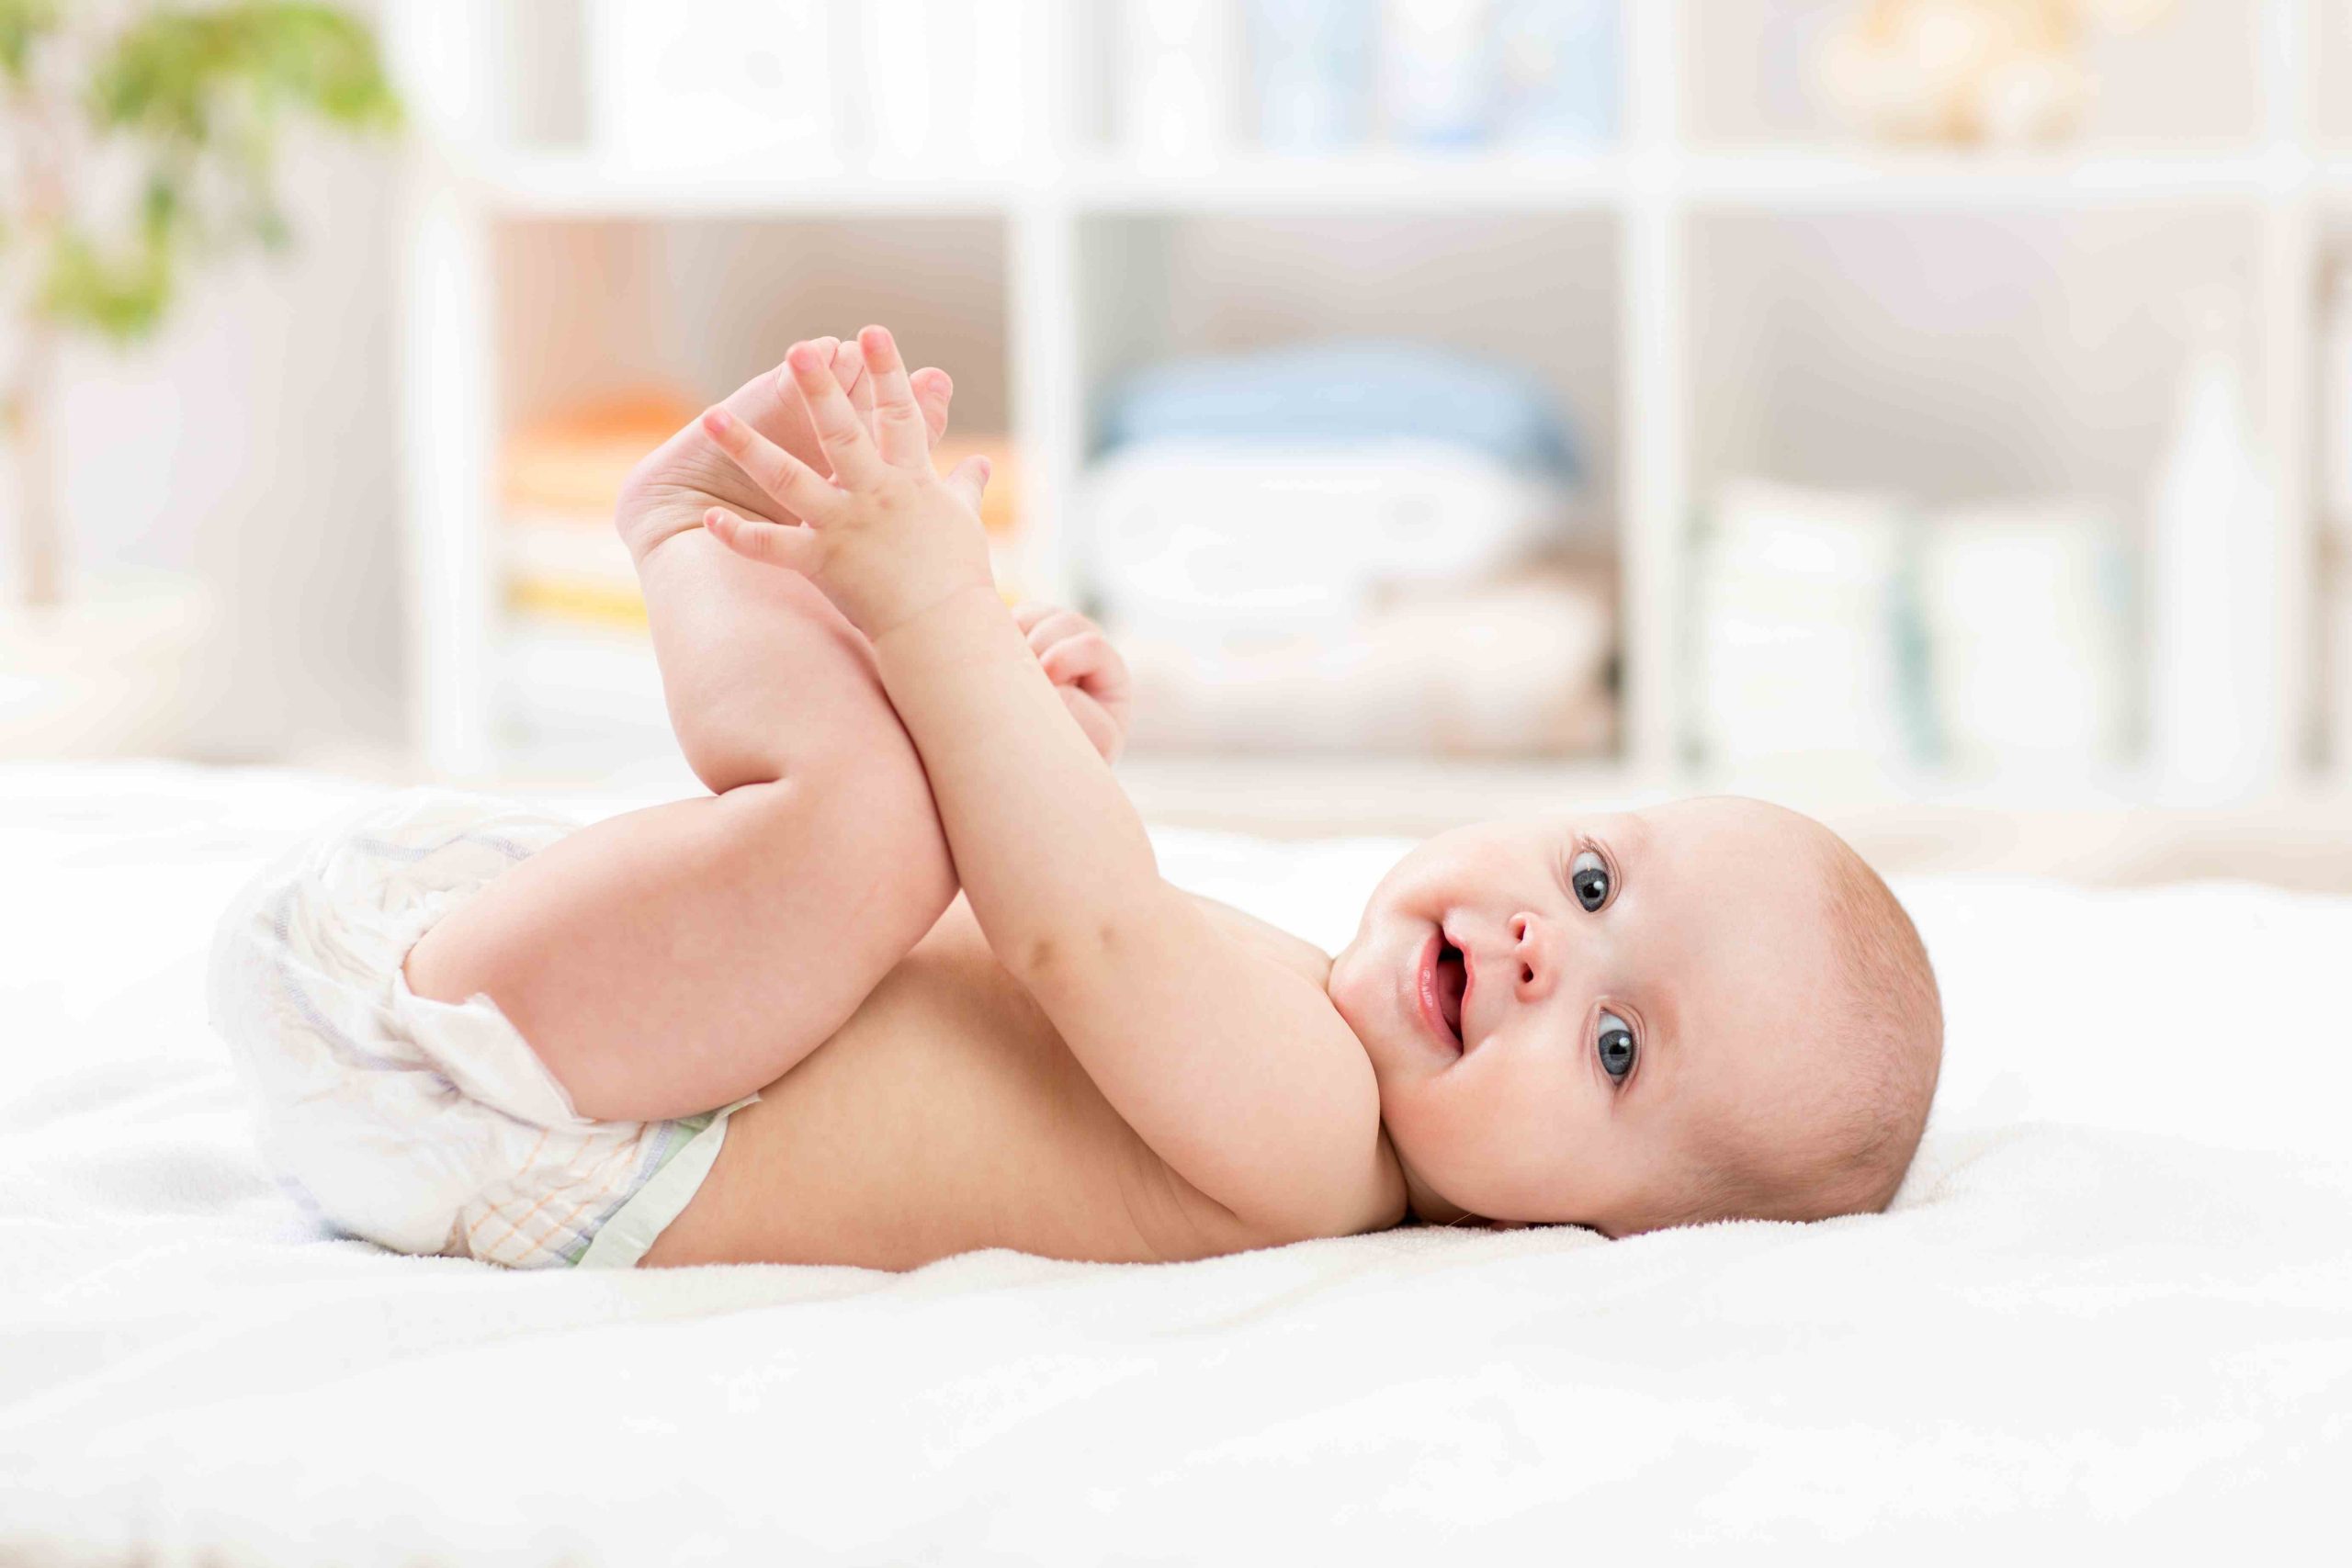 Comment améliorer le bien-être de bébé à la peau à tendance atopique ?